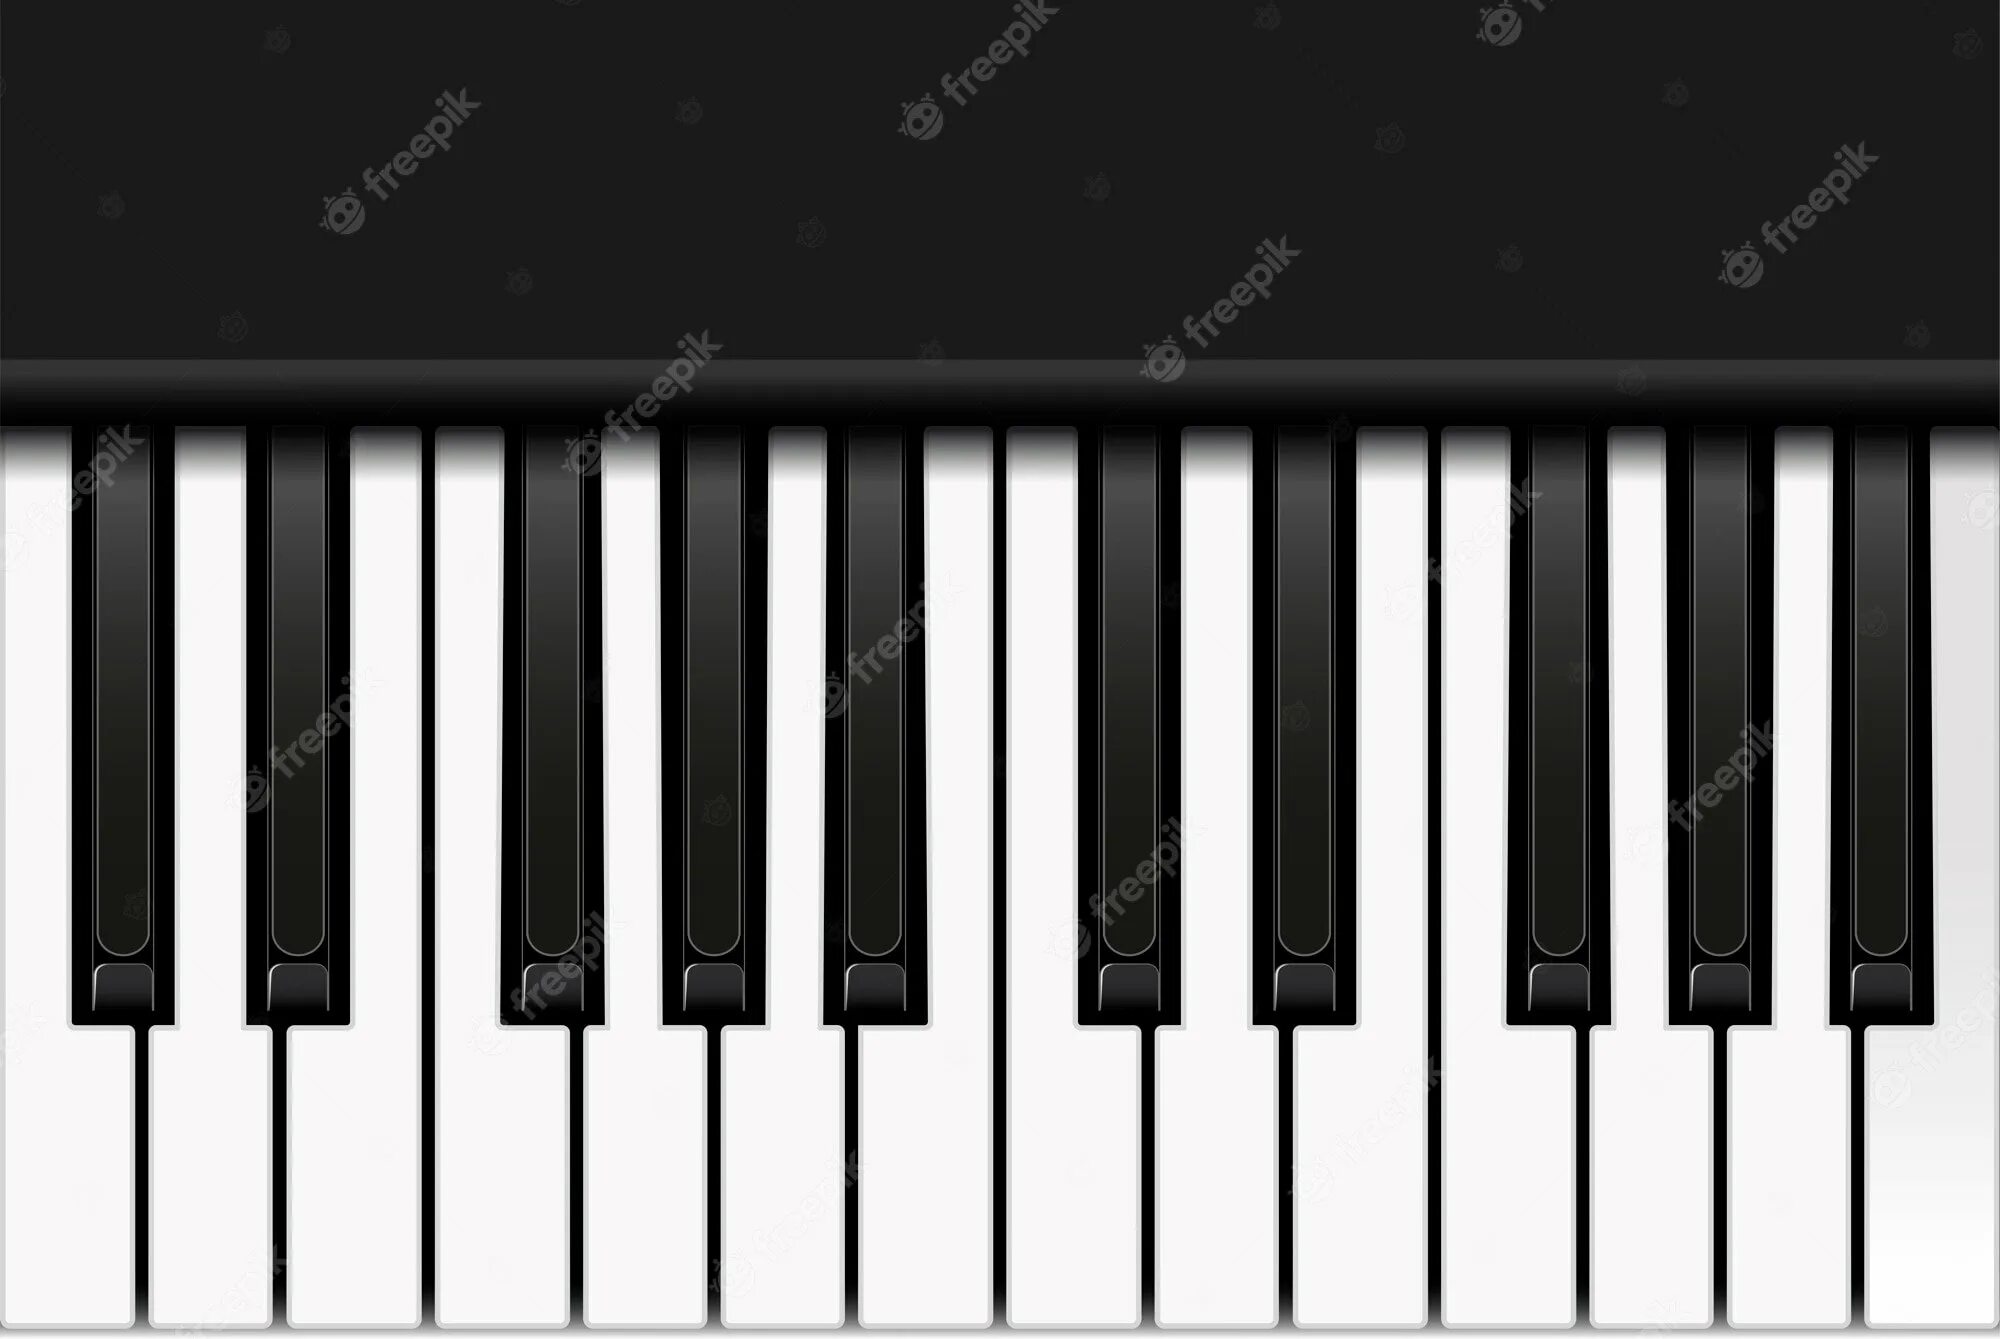 10 октава. Клавиатура пианино 3 Октава а4. Клавиатура пианино 1 Октава а4. Октава фортепиано 2 октавы. Клавиатура пианино 2 октавы.